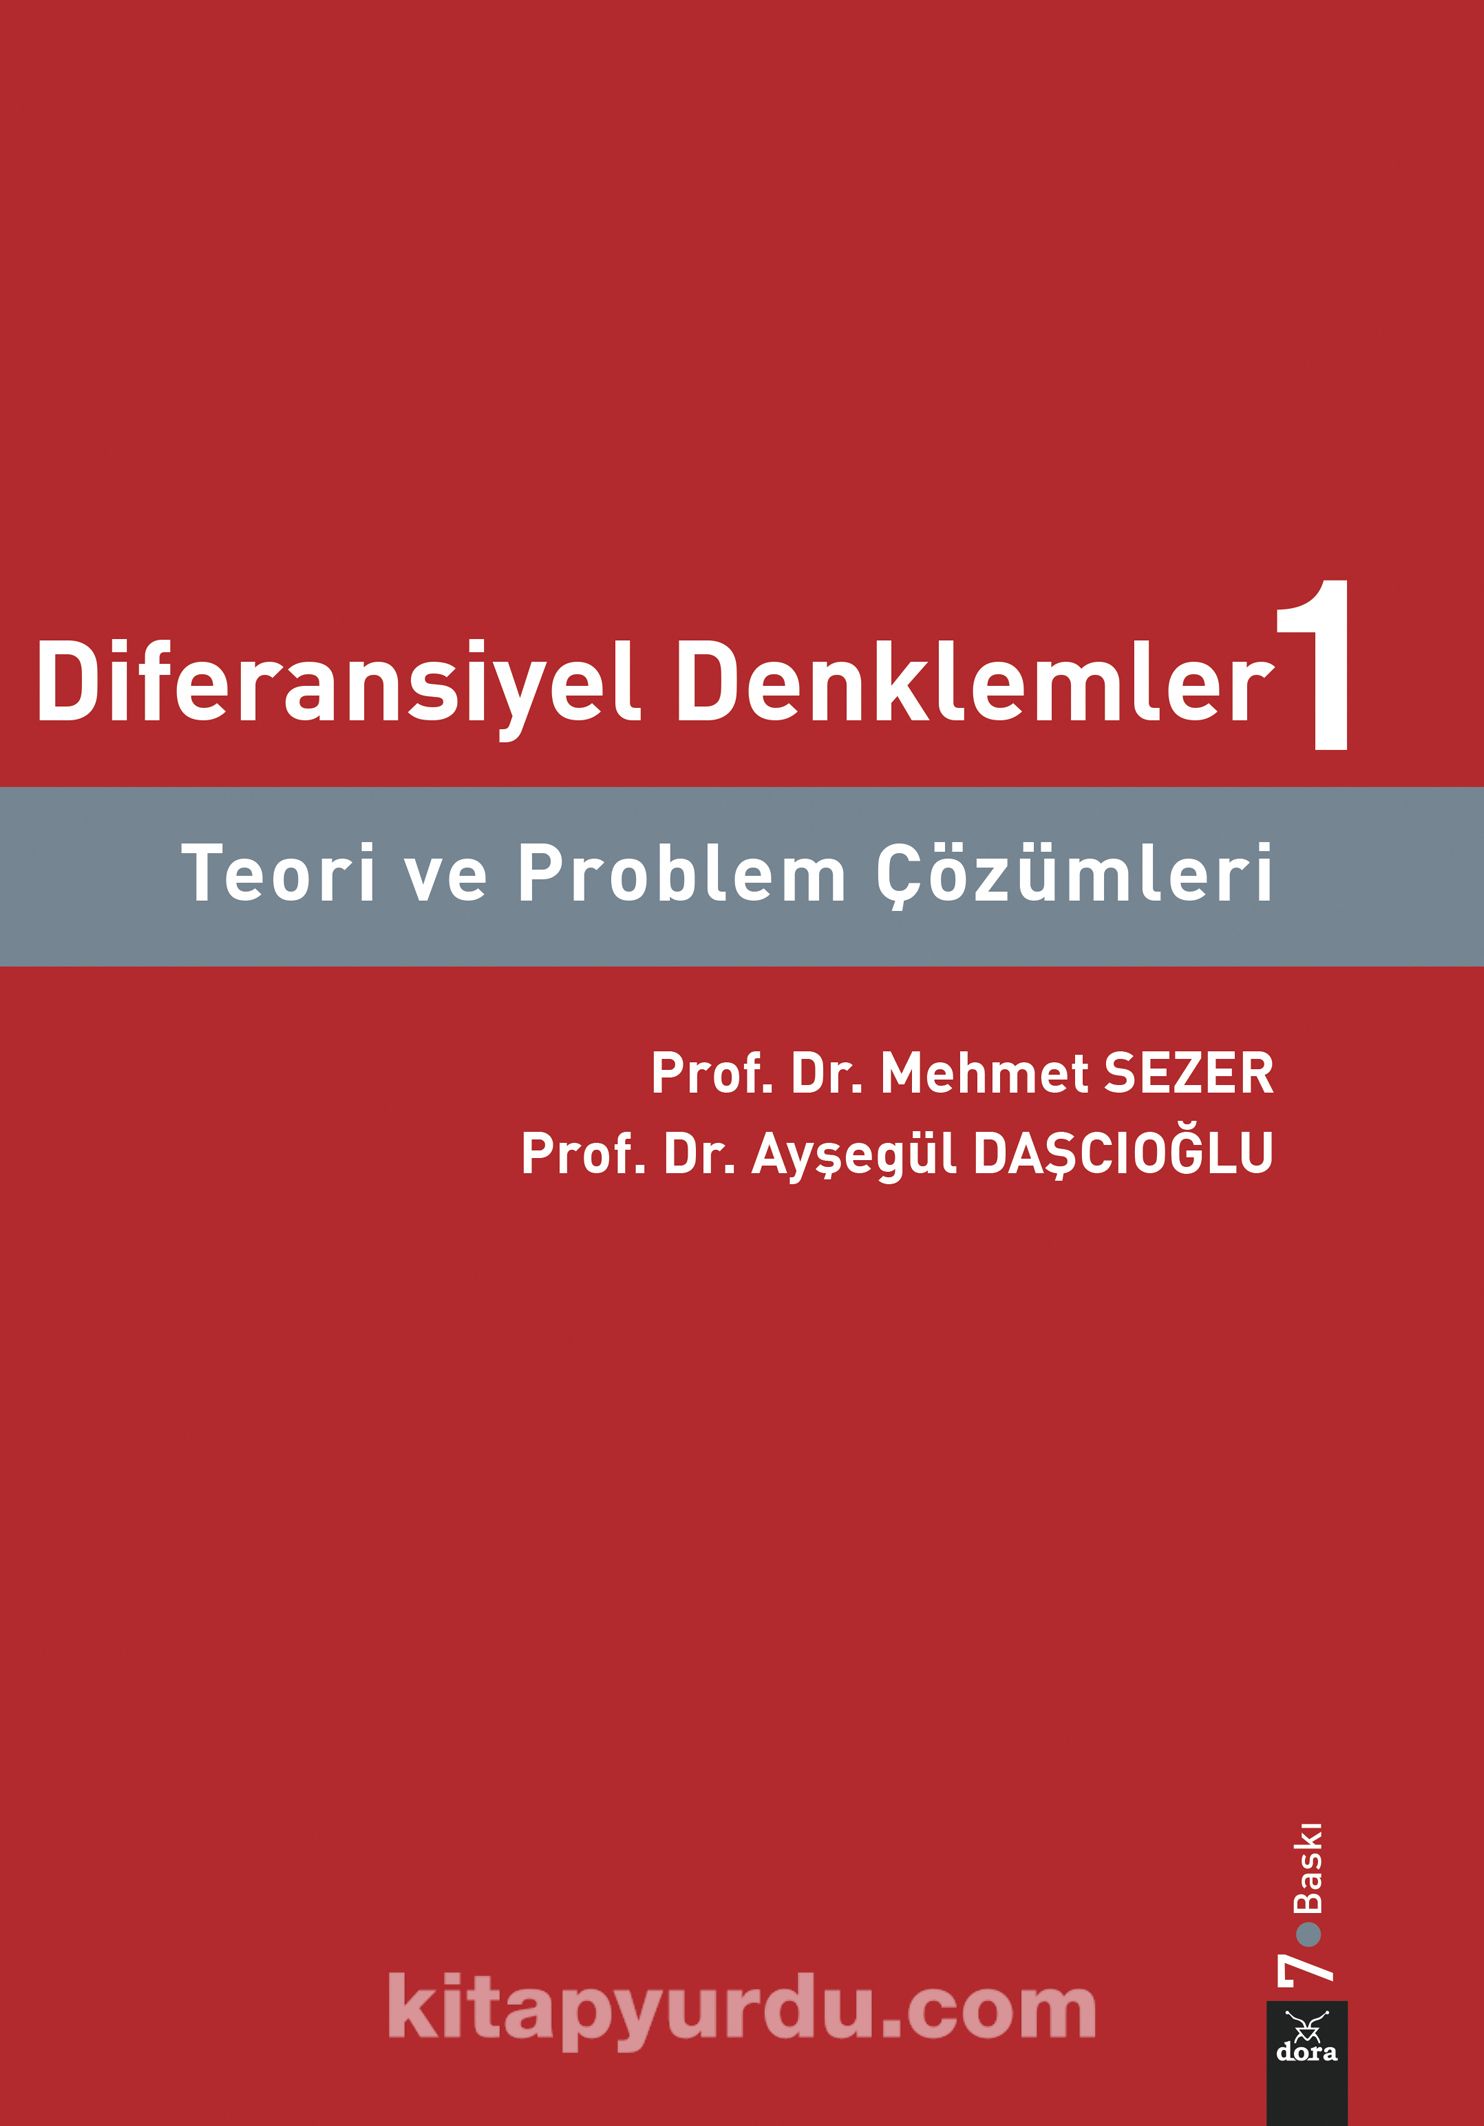 Diferansiyel Denklemler 1 & Teori ve Problem Çözümleri